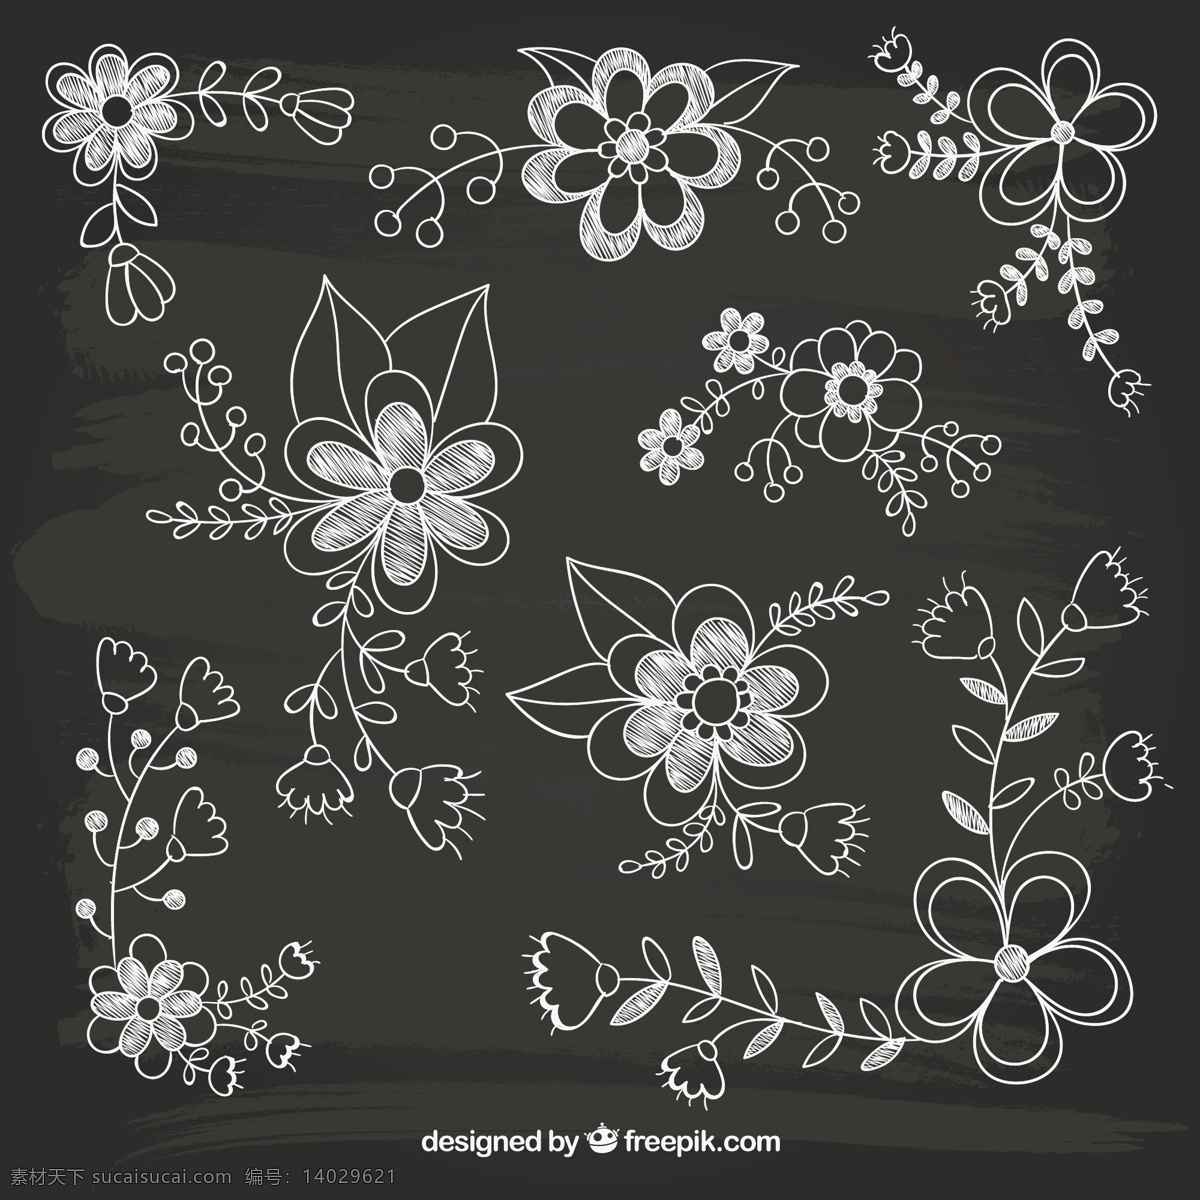 手绘花卉 手绘 白描 花朵 花卉 线稿 矢量图 平面素材